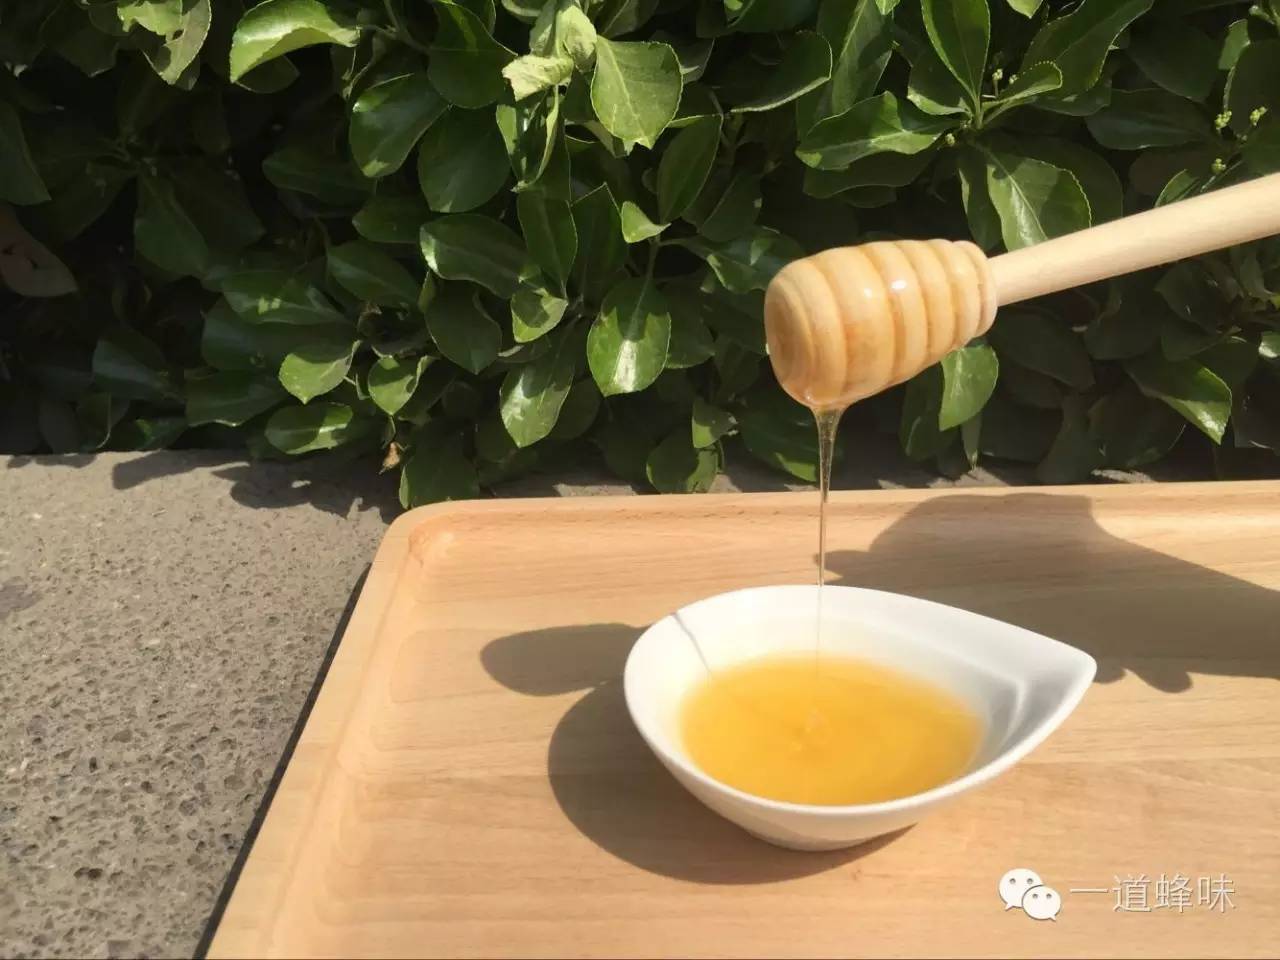 洋槐蜂蜜 蜂蜜生姜茶 中蜂蜜 红糖蜂蜜面膜怎么做 红糖蜂蜜祛斑面膜